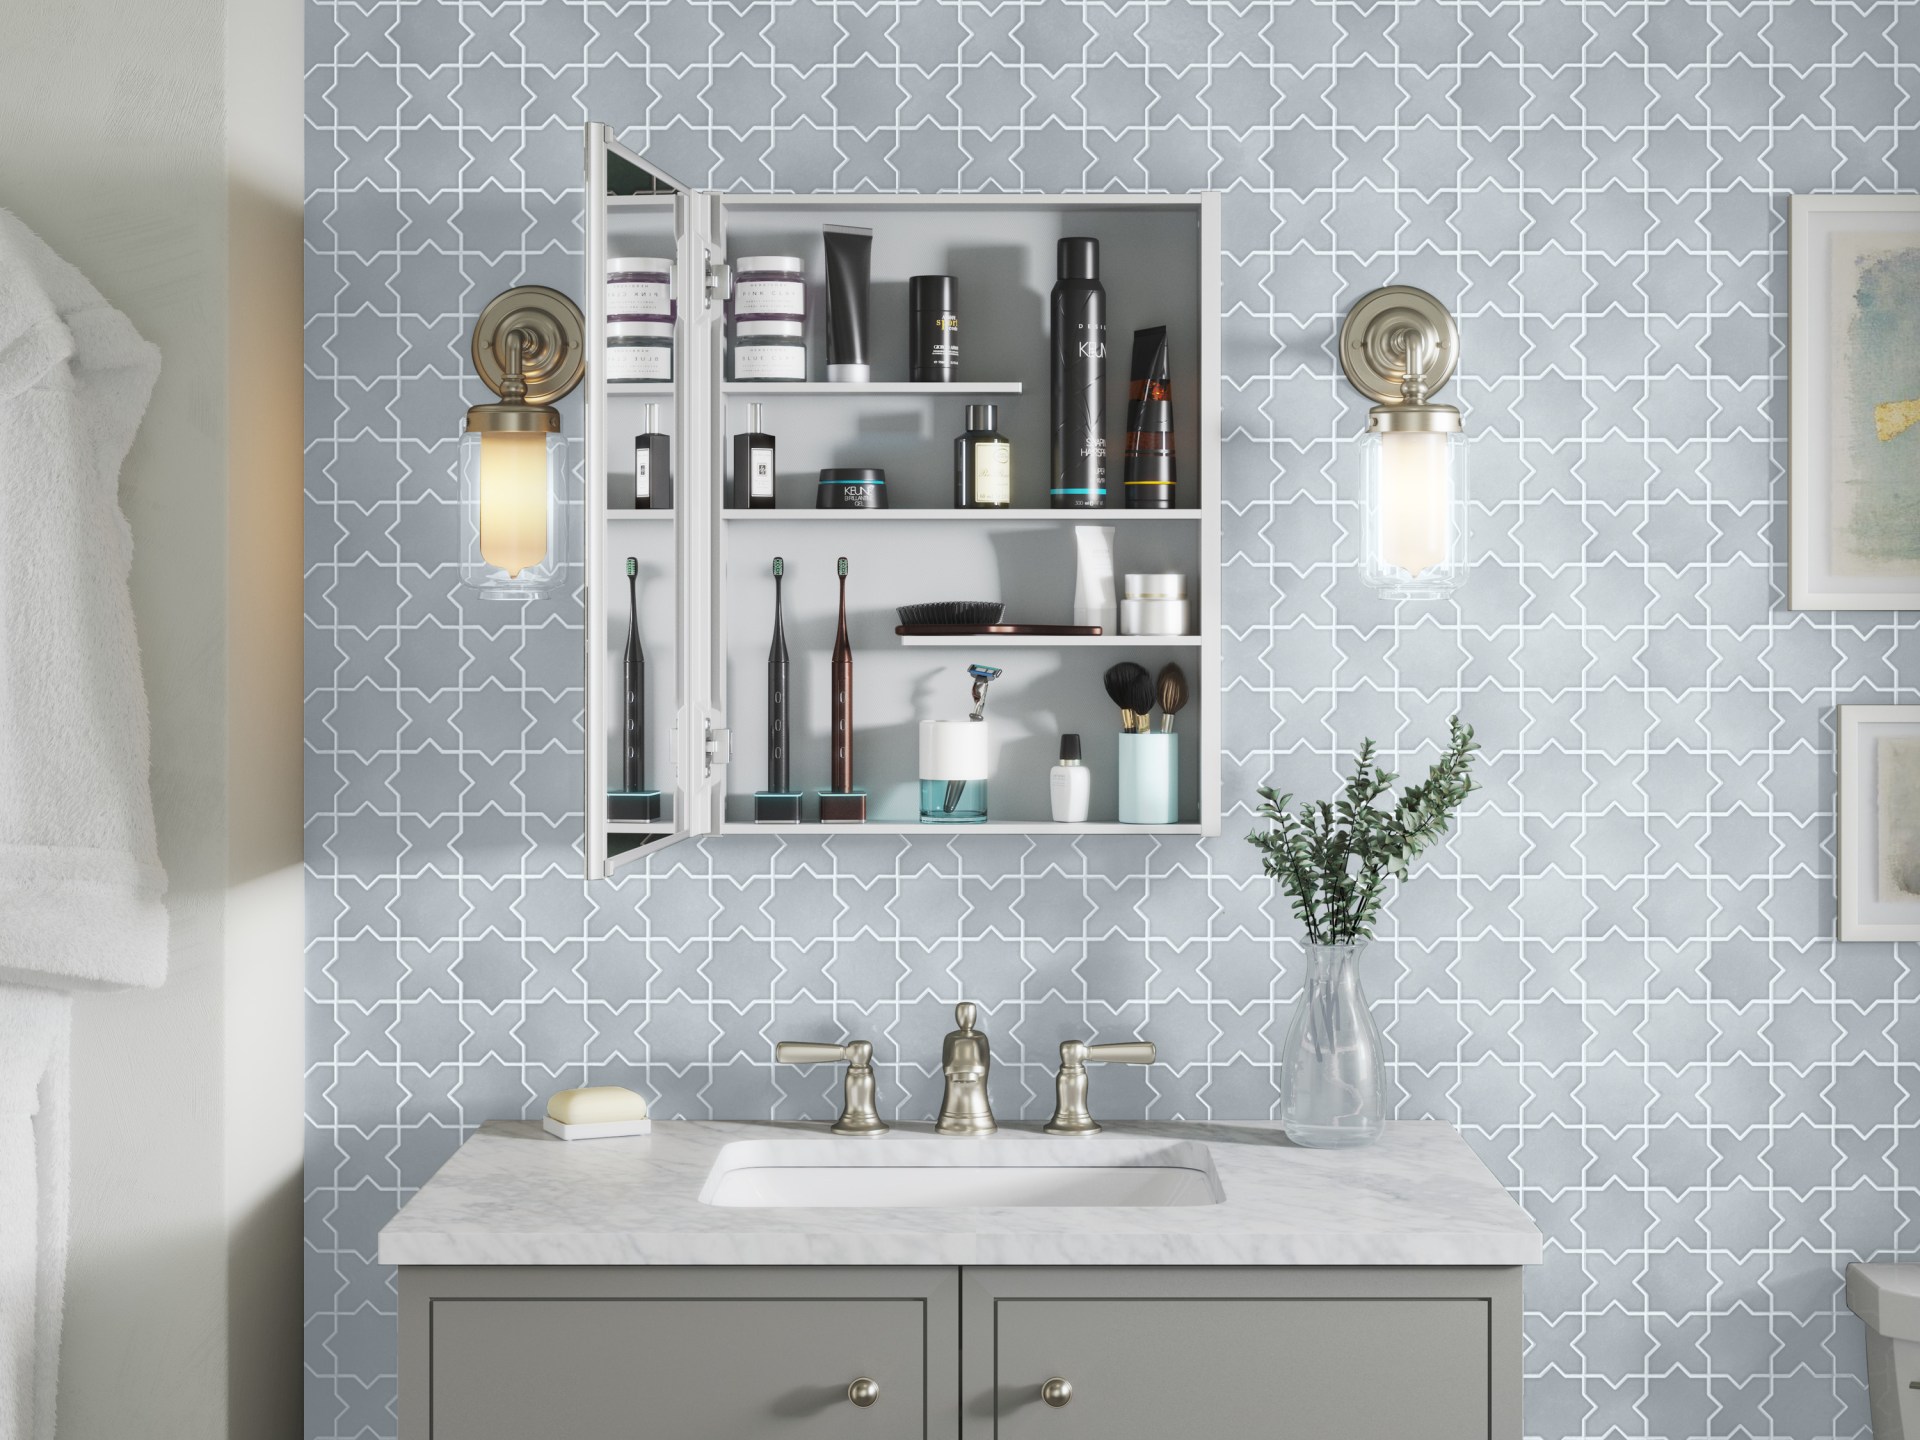 Kohler Medicine Cabinet Costco, Medicine Cabinet Mirrors For Bathrooms